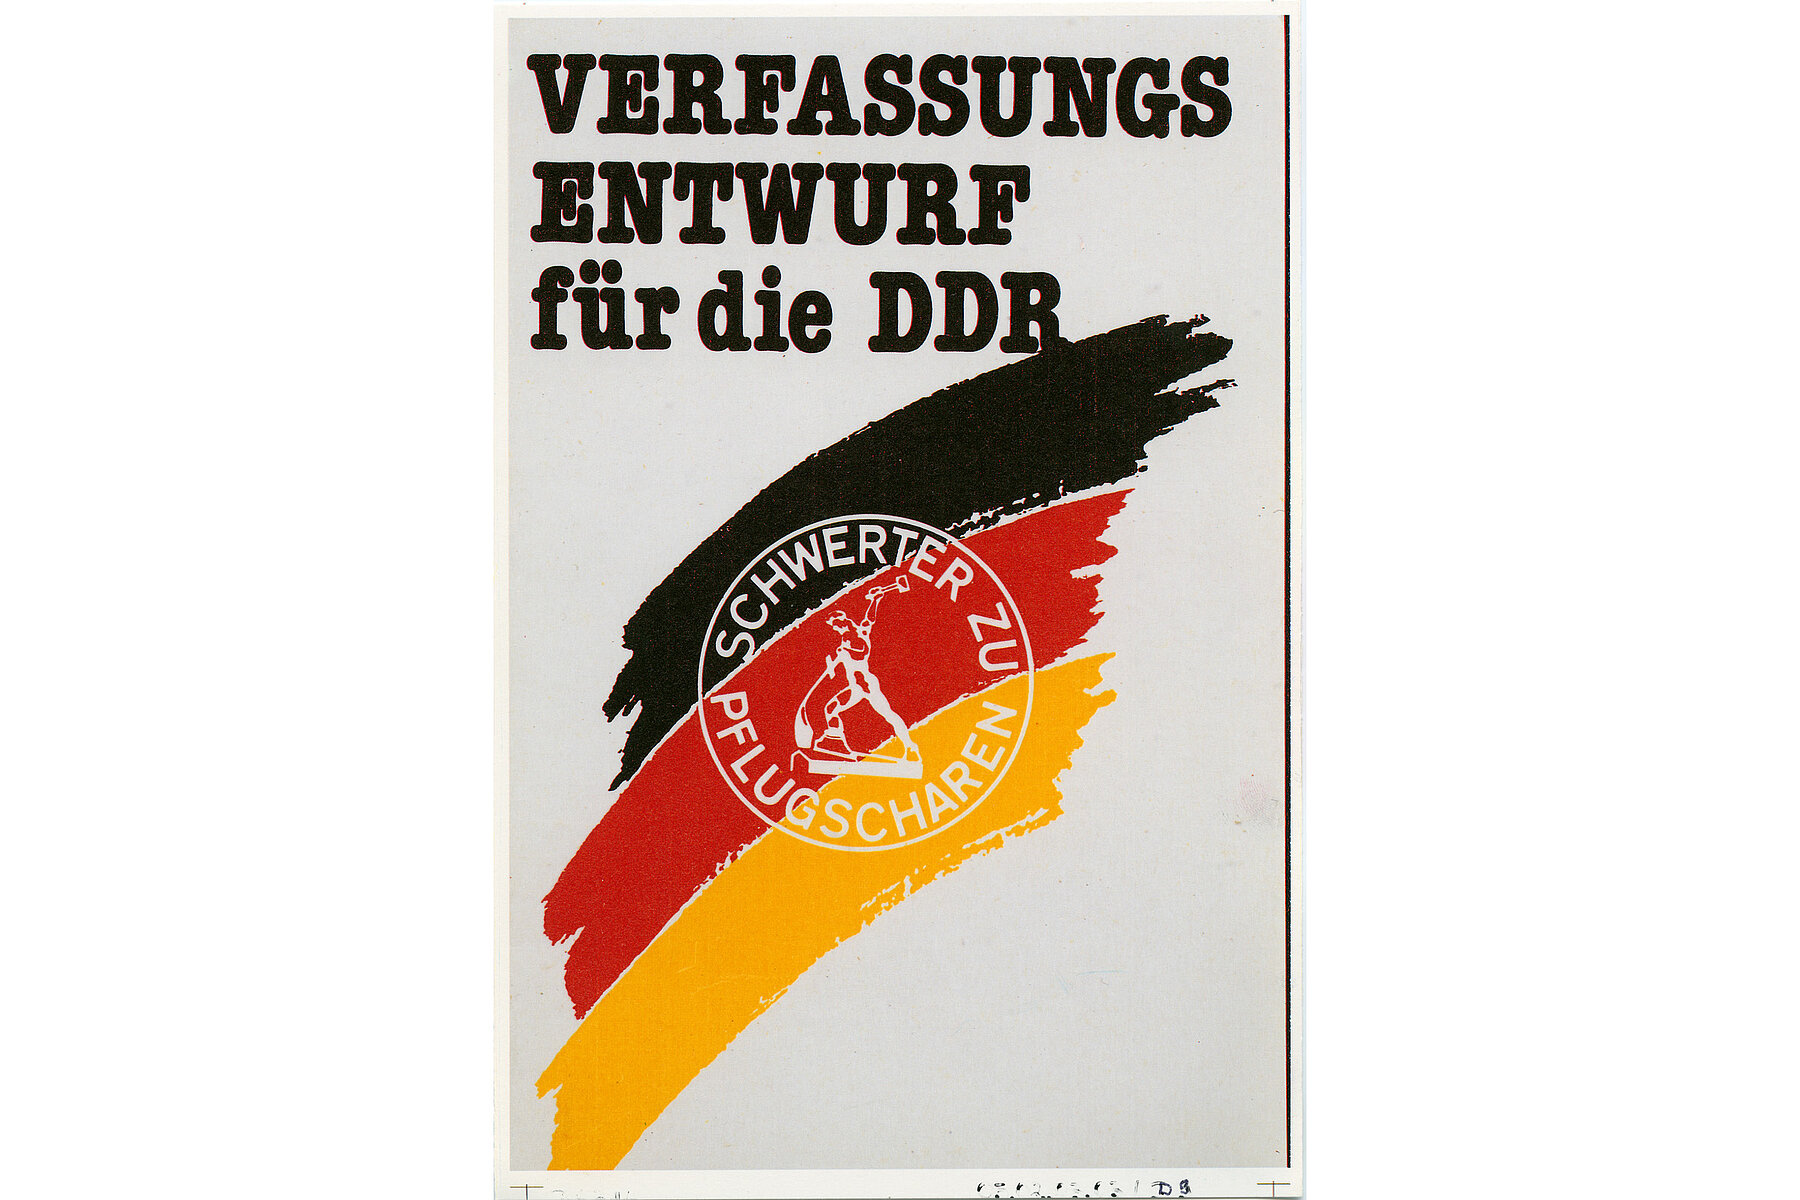 Der Verfassungsentwurf für die DDR: Auf der Vorderseite sind die Farben Schwarz-Rot-Gold in Pinselstrichen dargestellt. Darüber liegt das Logo Schwerter zu Pflugscharen mit einer muskulösen Figur, die ein Schwert zu einem Pflug umschmiedet.